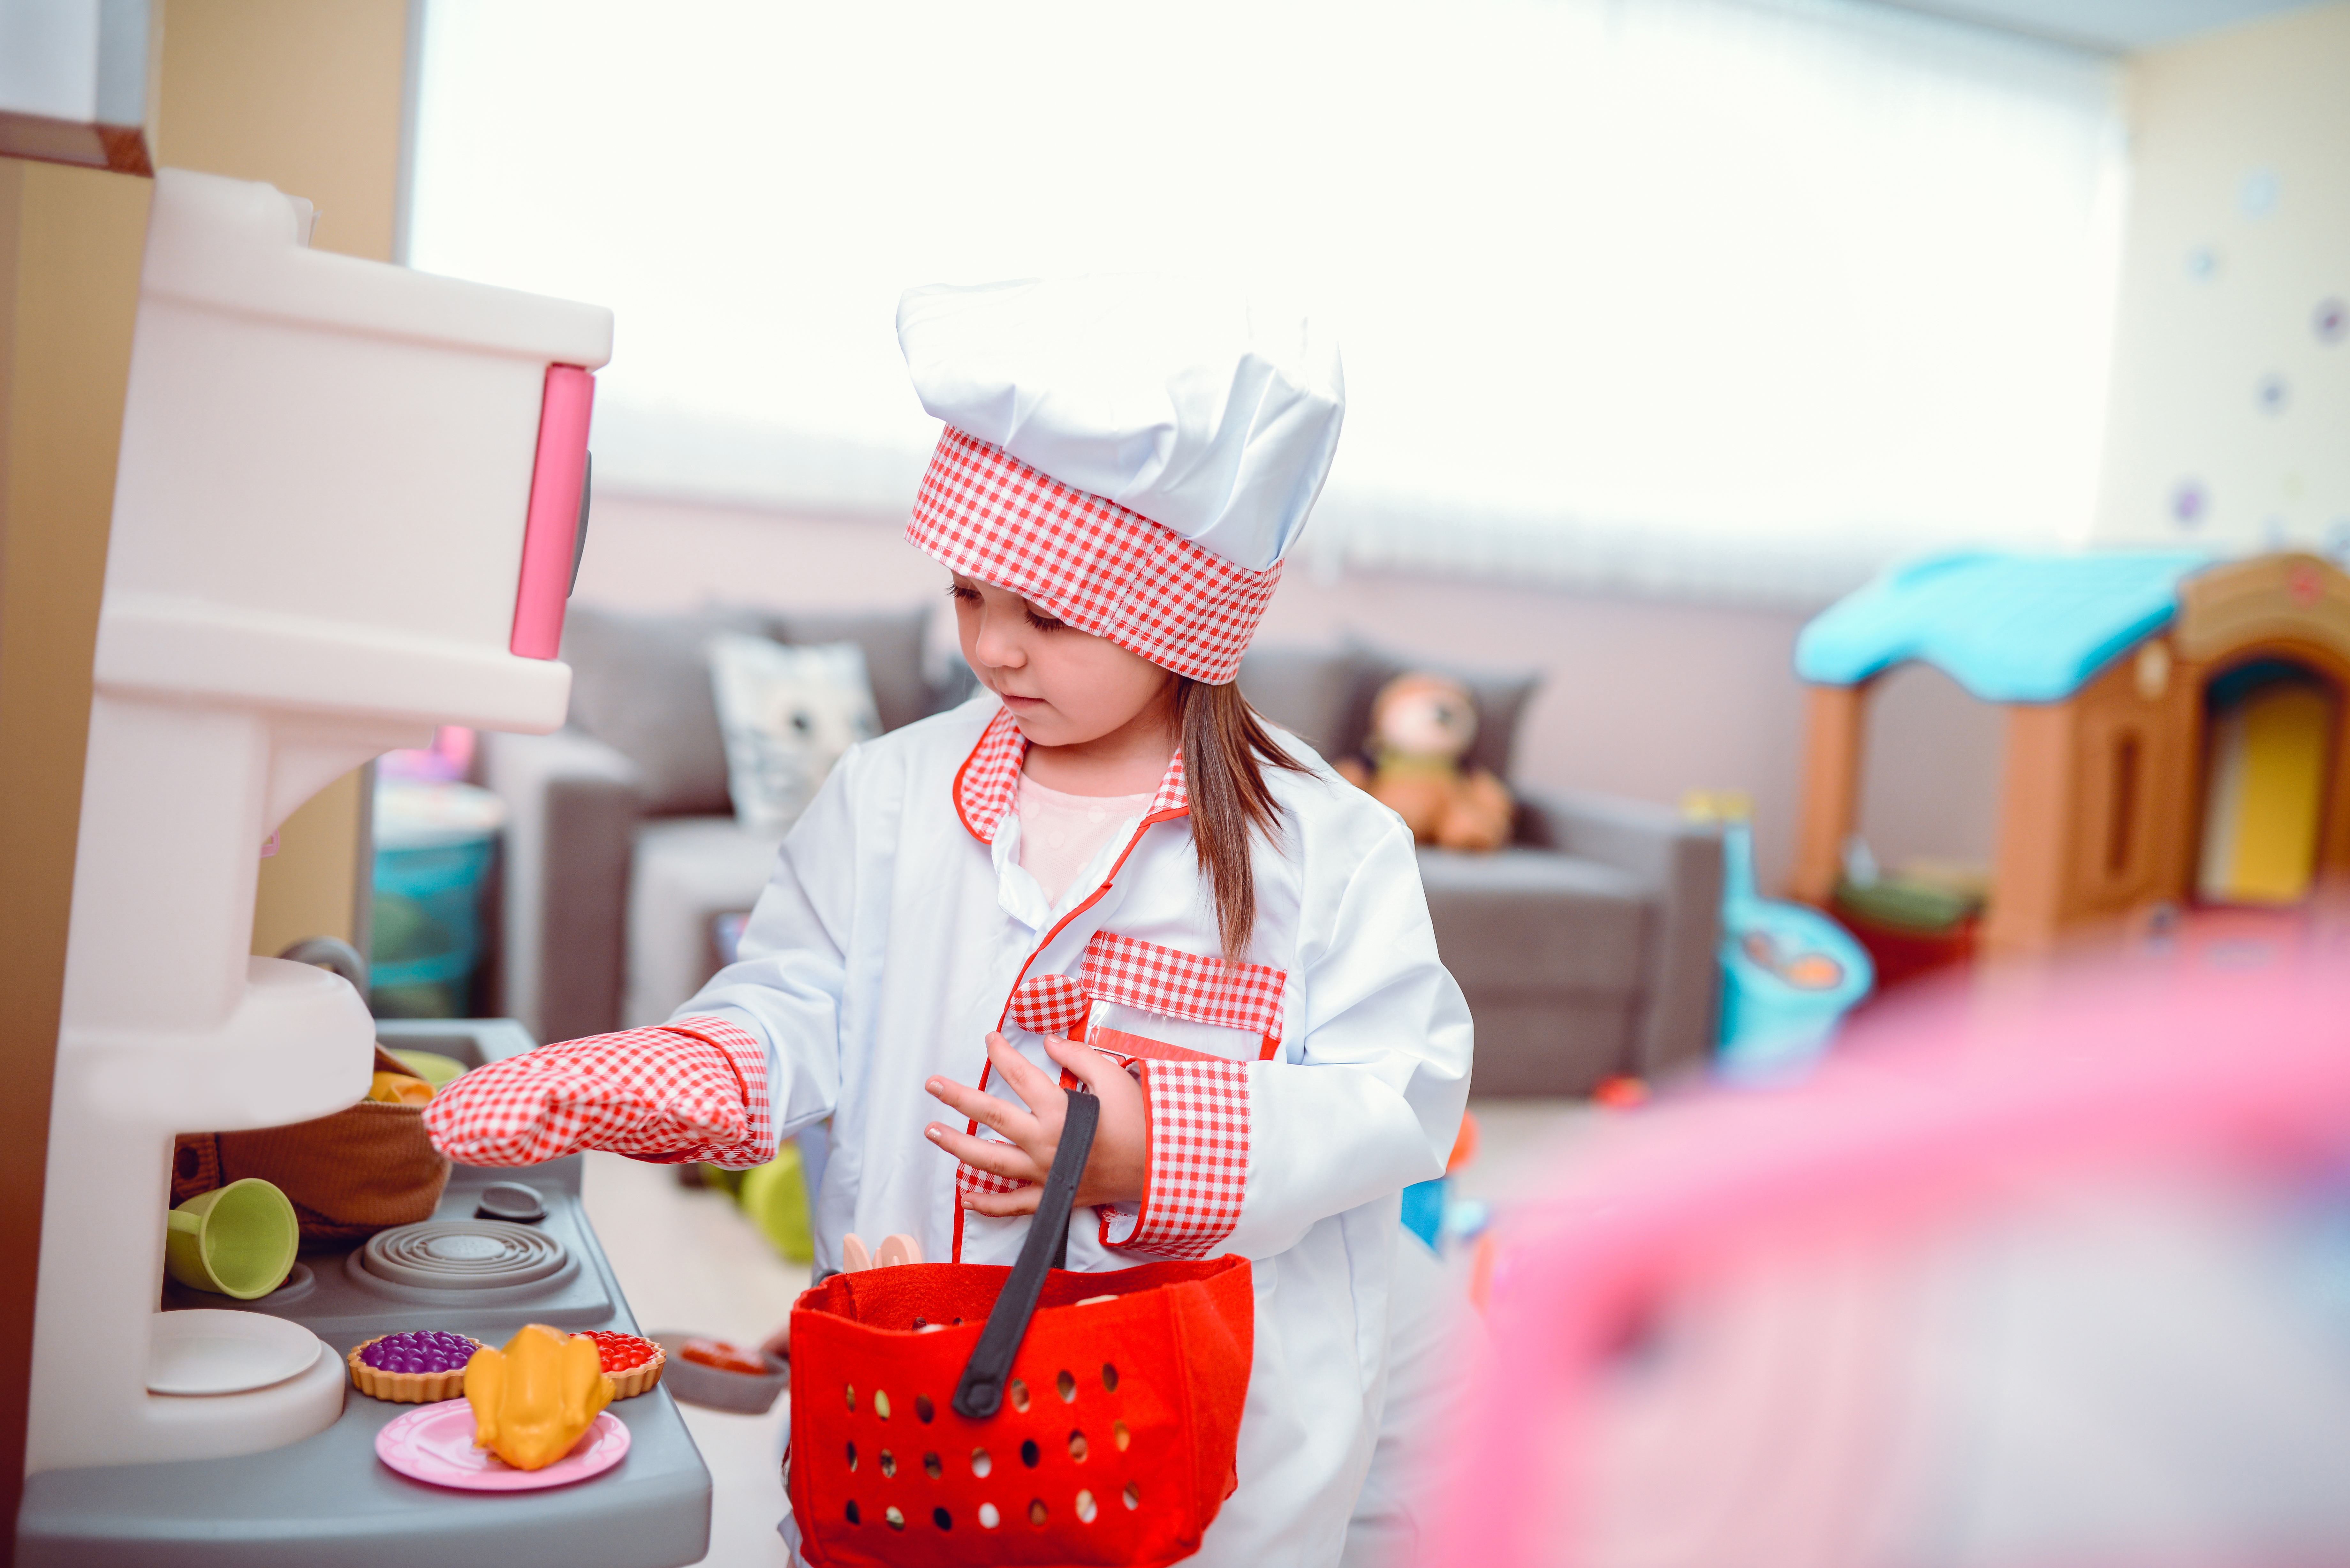 Une petite fille joue au chef cuisinier dans une classe d'école maternelle | Source : Getty Images